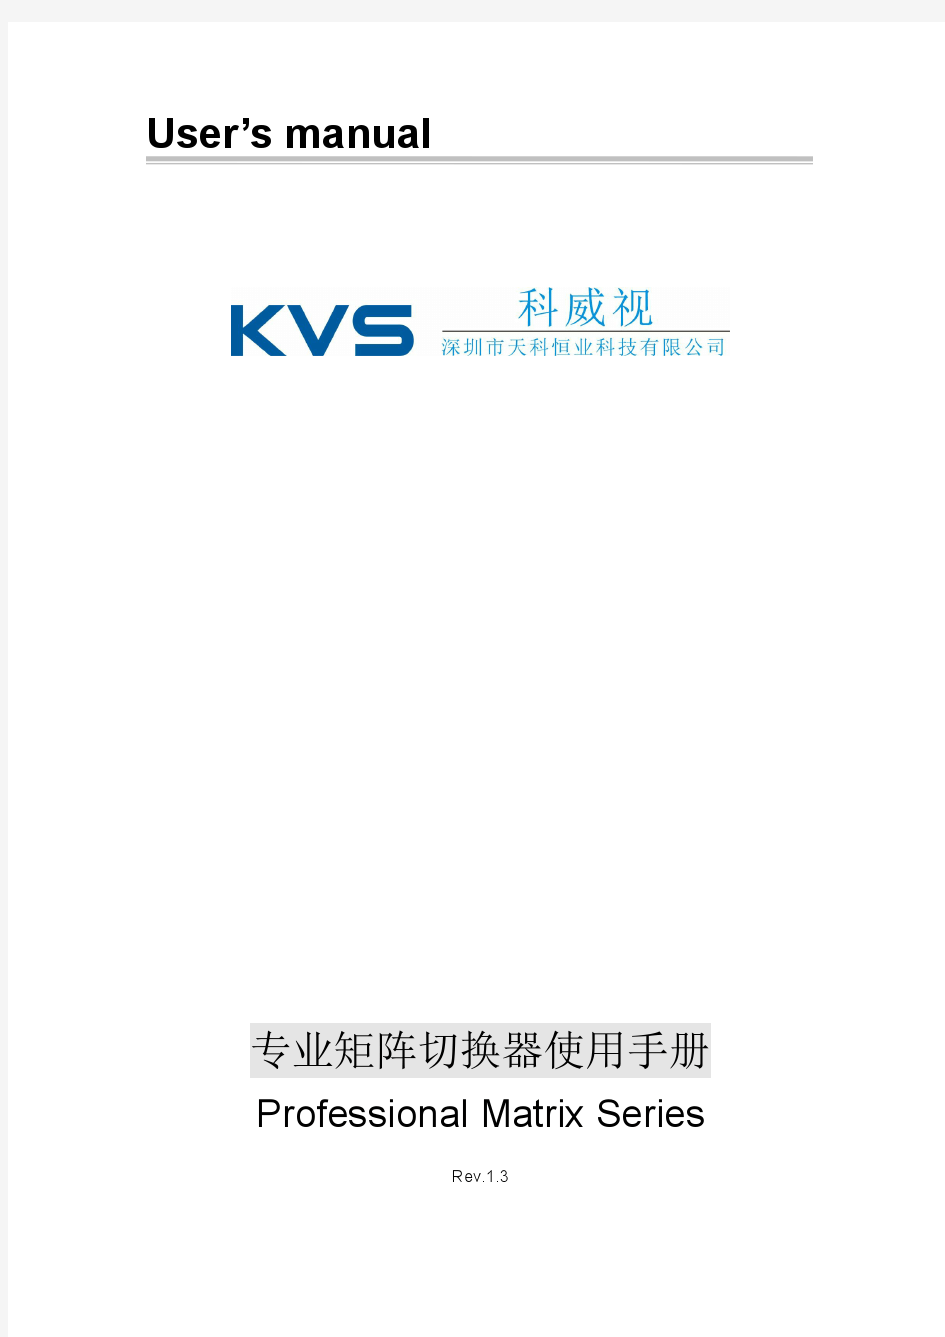 深圳市天科恒业科技有限公司(KVS)矩阵产品手册 V1.3